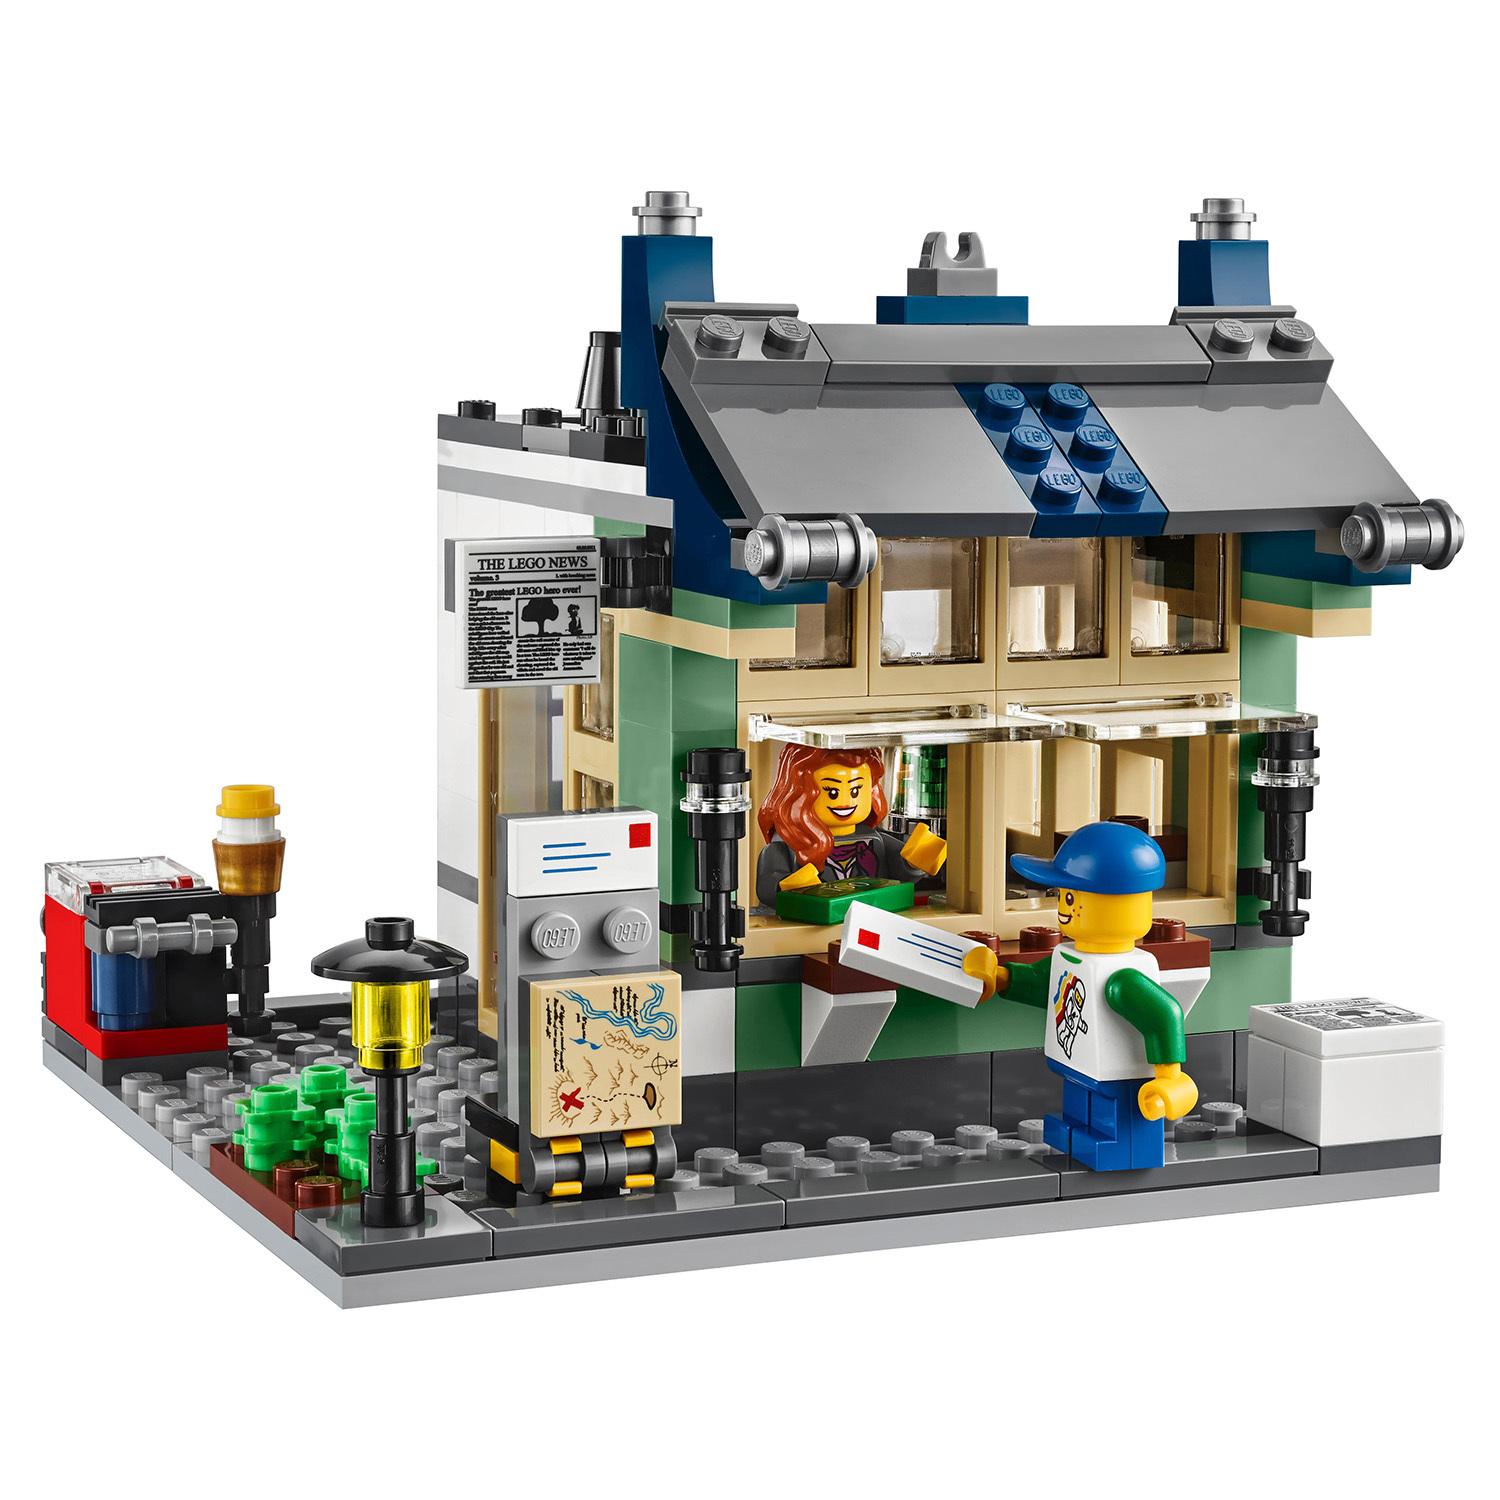 Lego Creator 31036 Магазин по продаже игрушек и продуктов